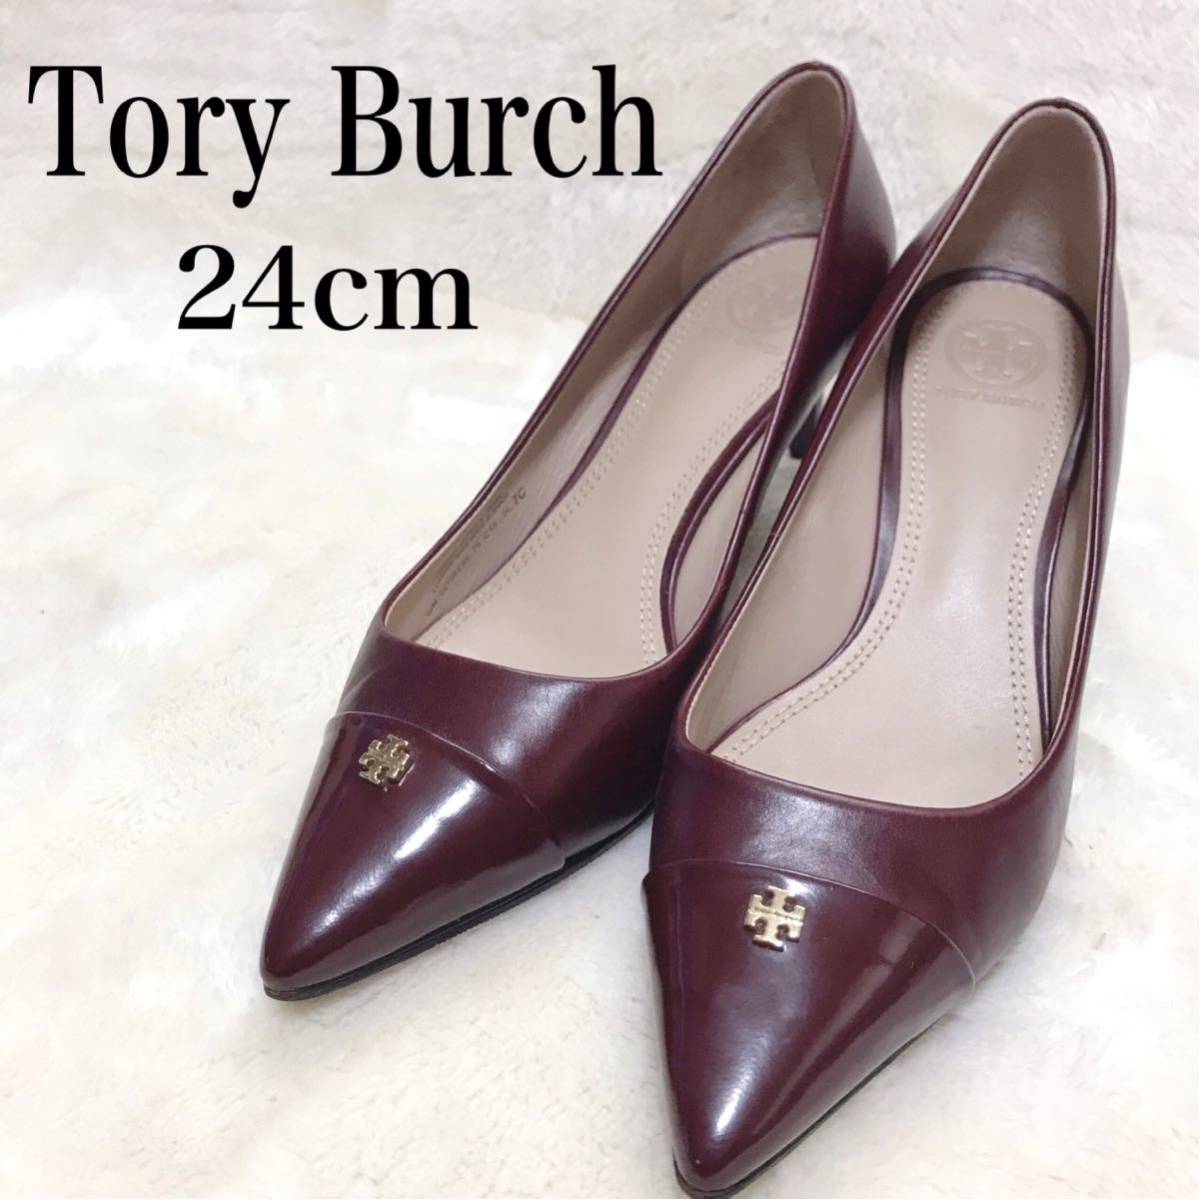 Tory Burch トリーバーチ パンプス ワインレッド ロゴ ヒール 靴 24cm